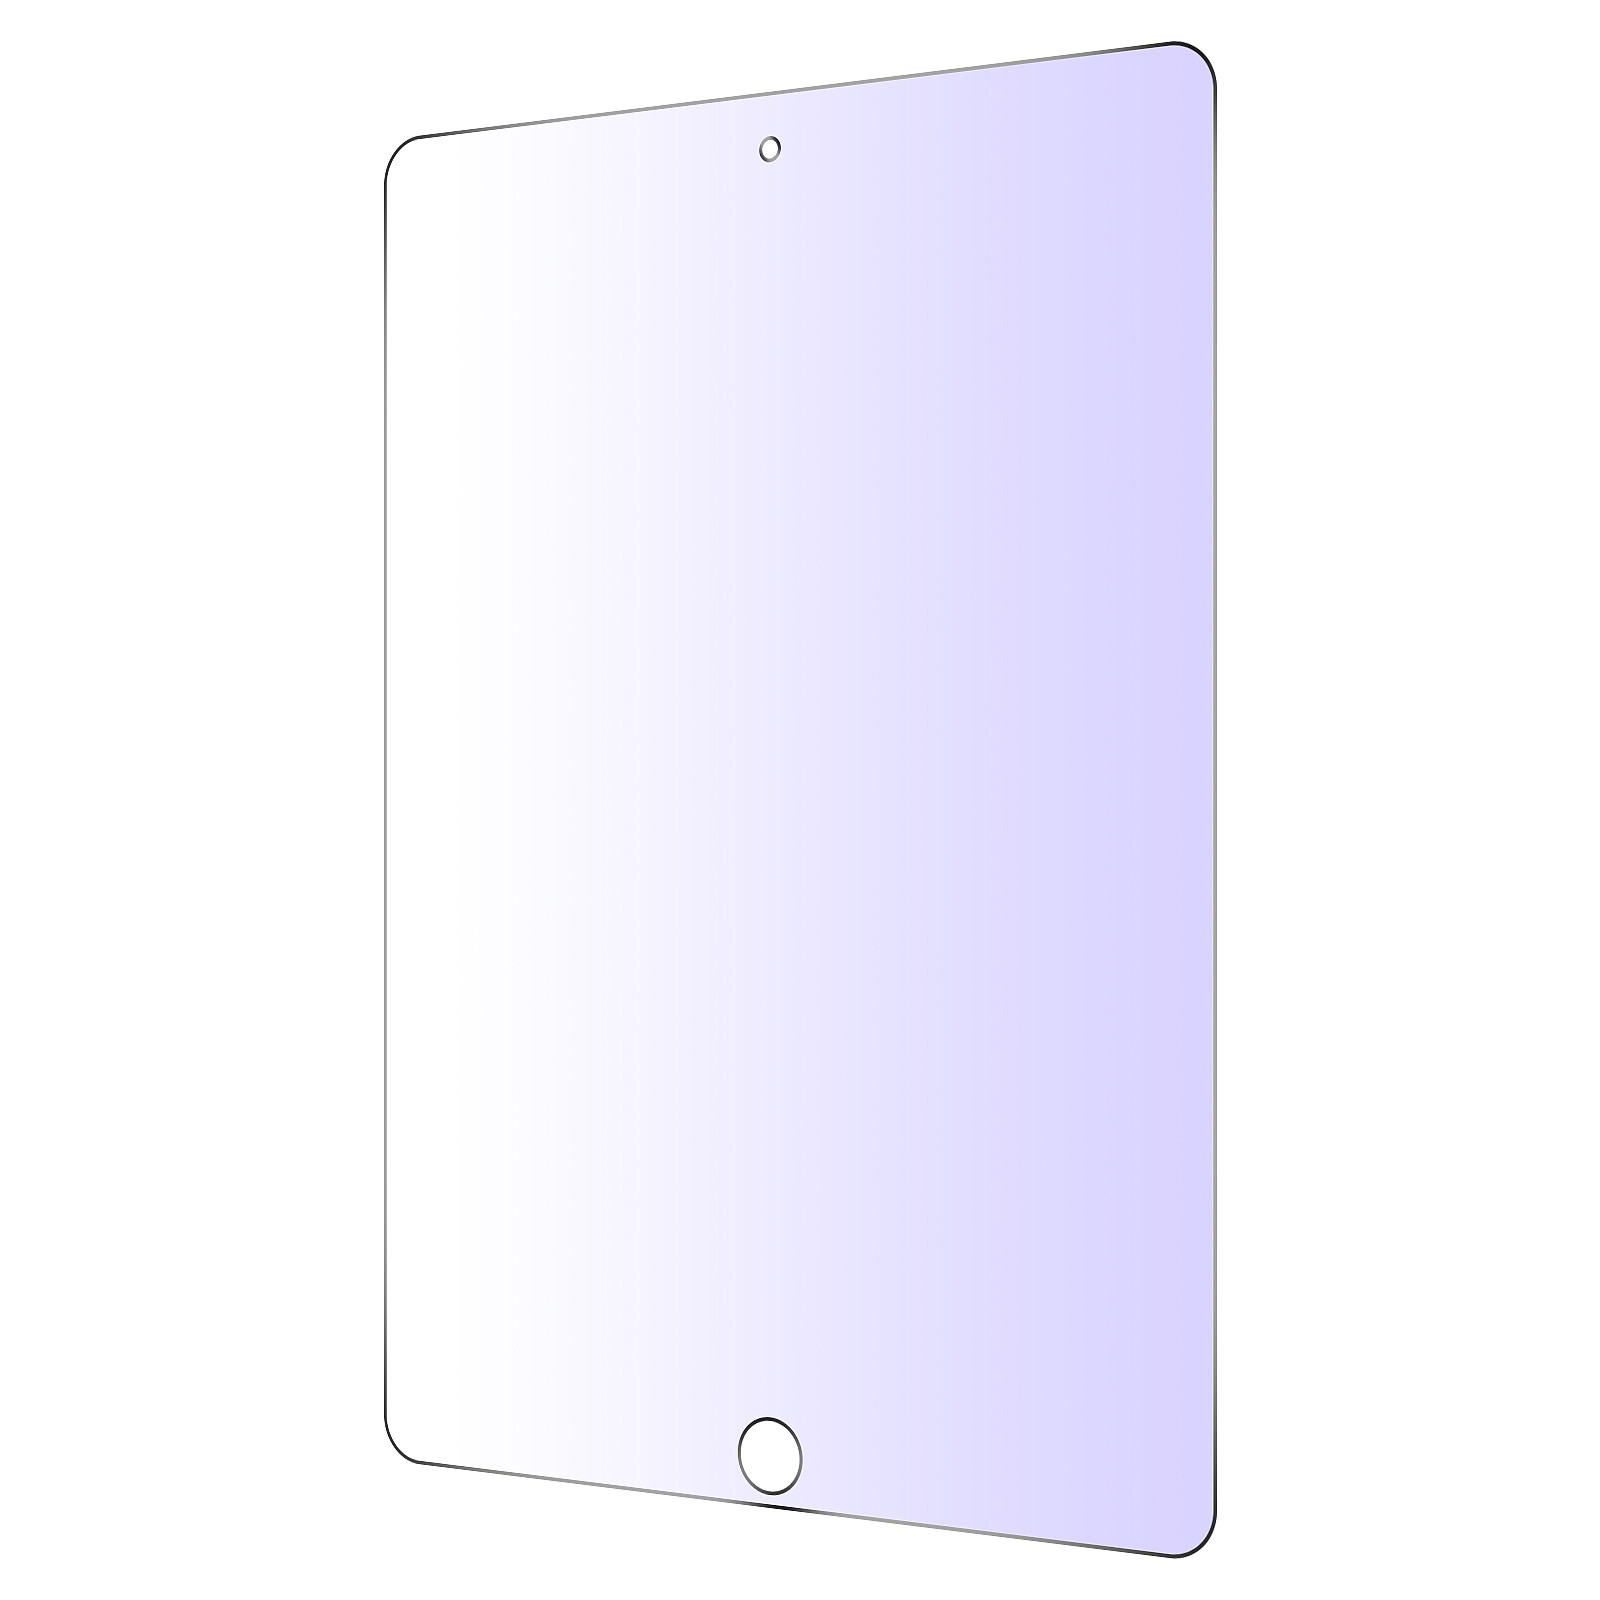 Verre trempé iPad 5 / iPad 6 / iPad Air Anti-lumière Bleue, Protection  écran à Bords Biseautés 2.5D - Transparent